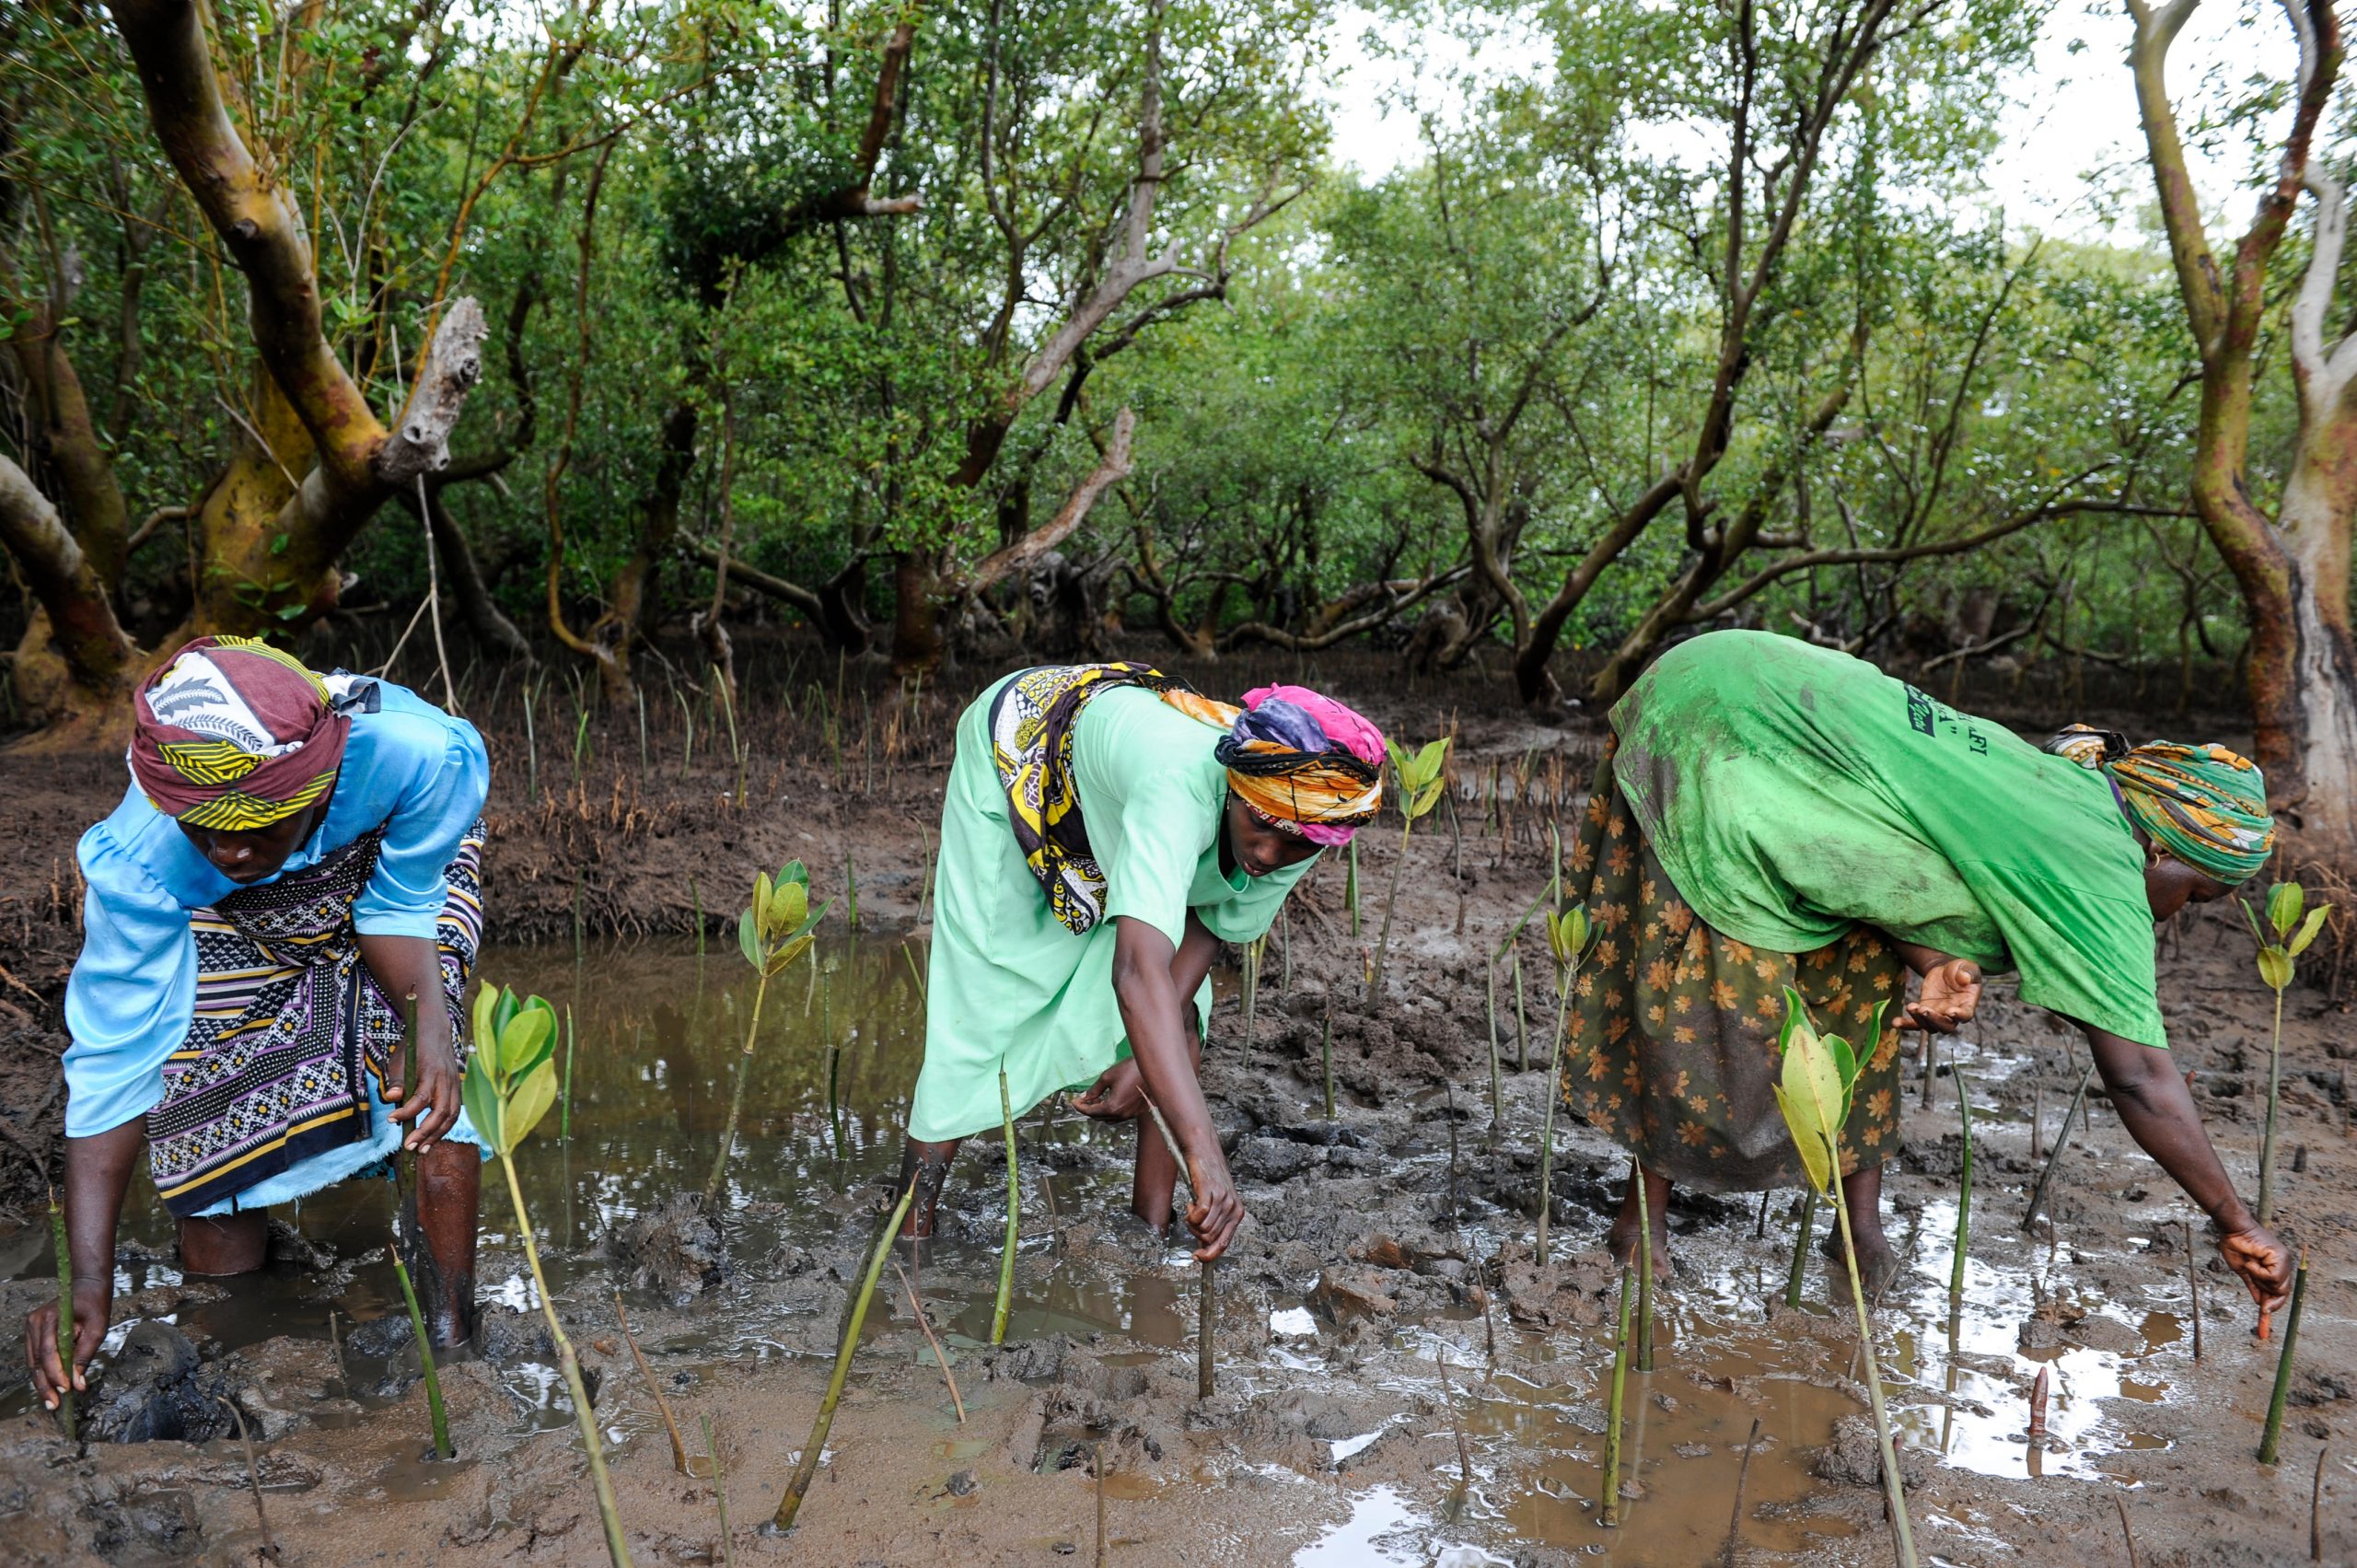 Three women bowed down on planting mangrove saplings